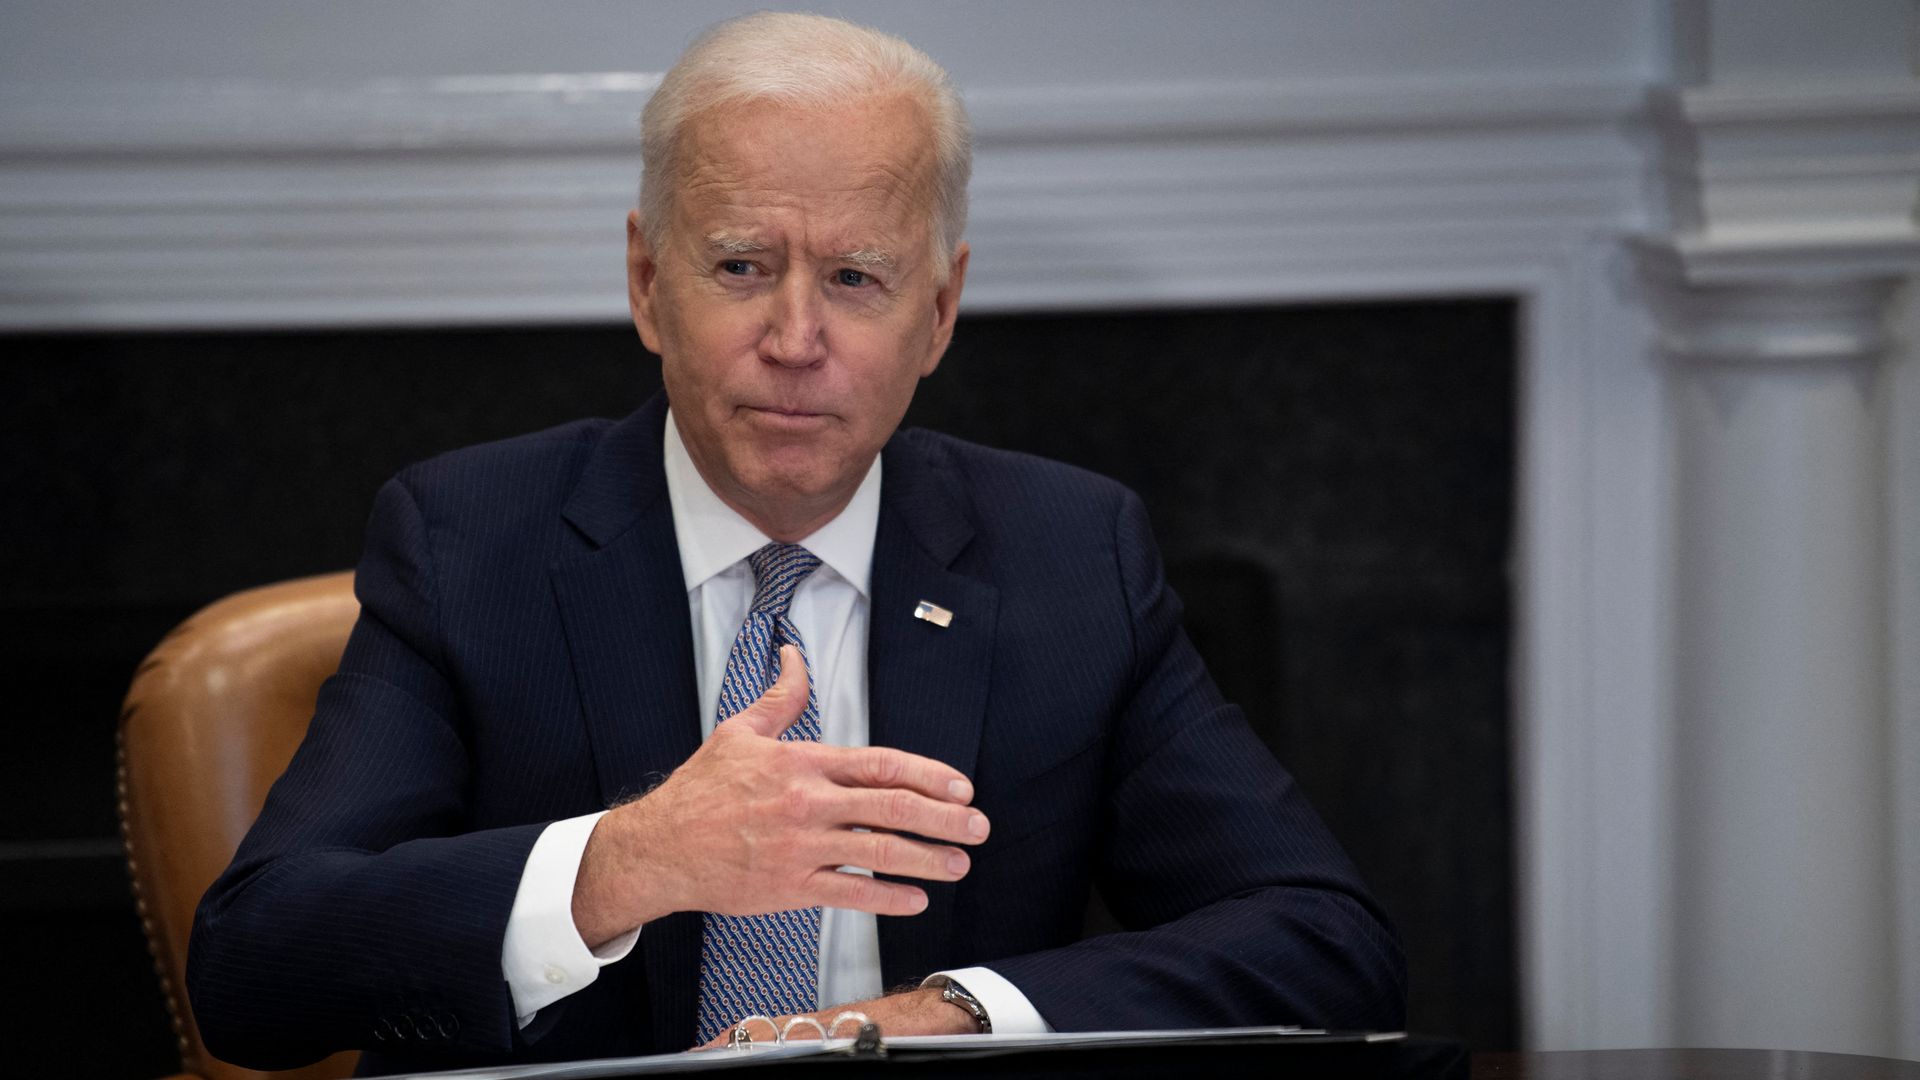 Joe Biden sits behind a desk 